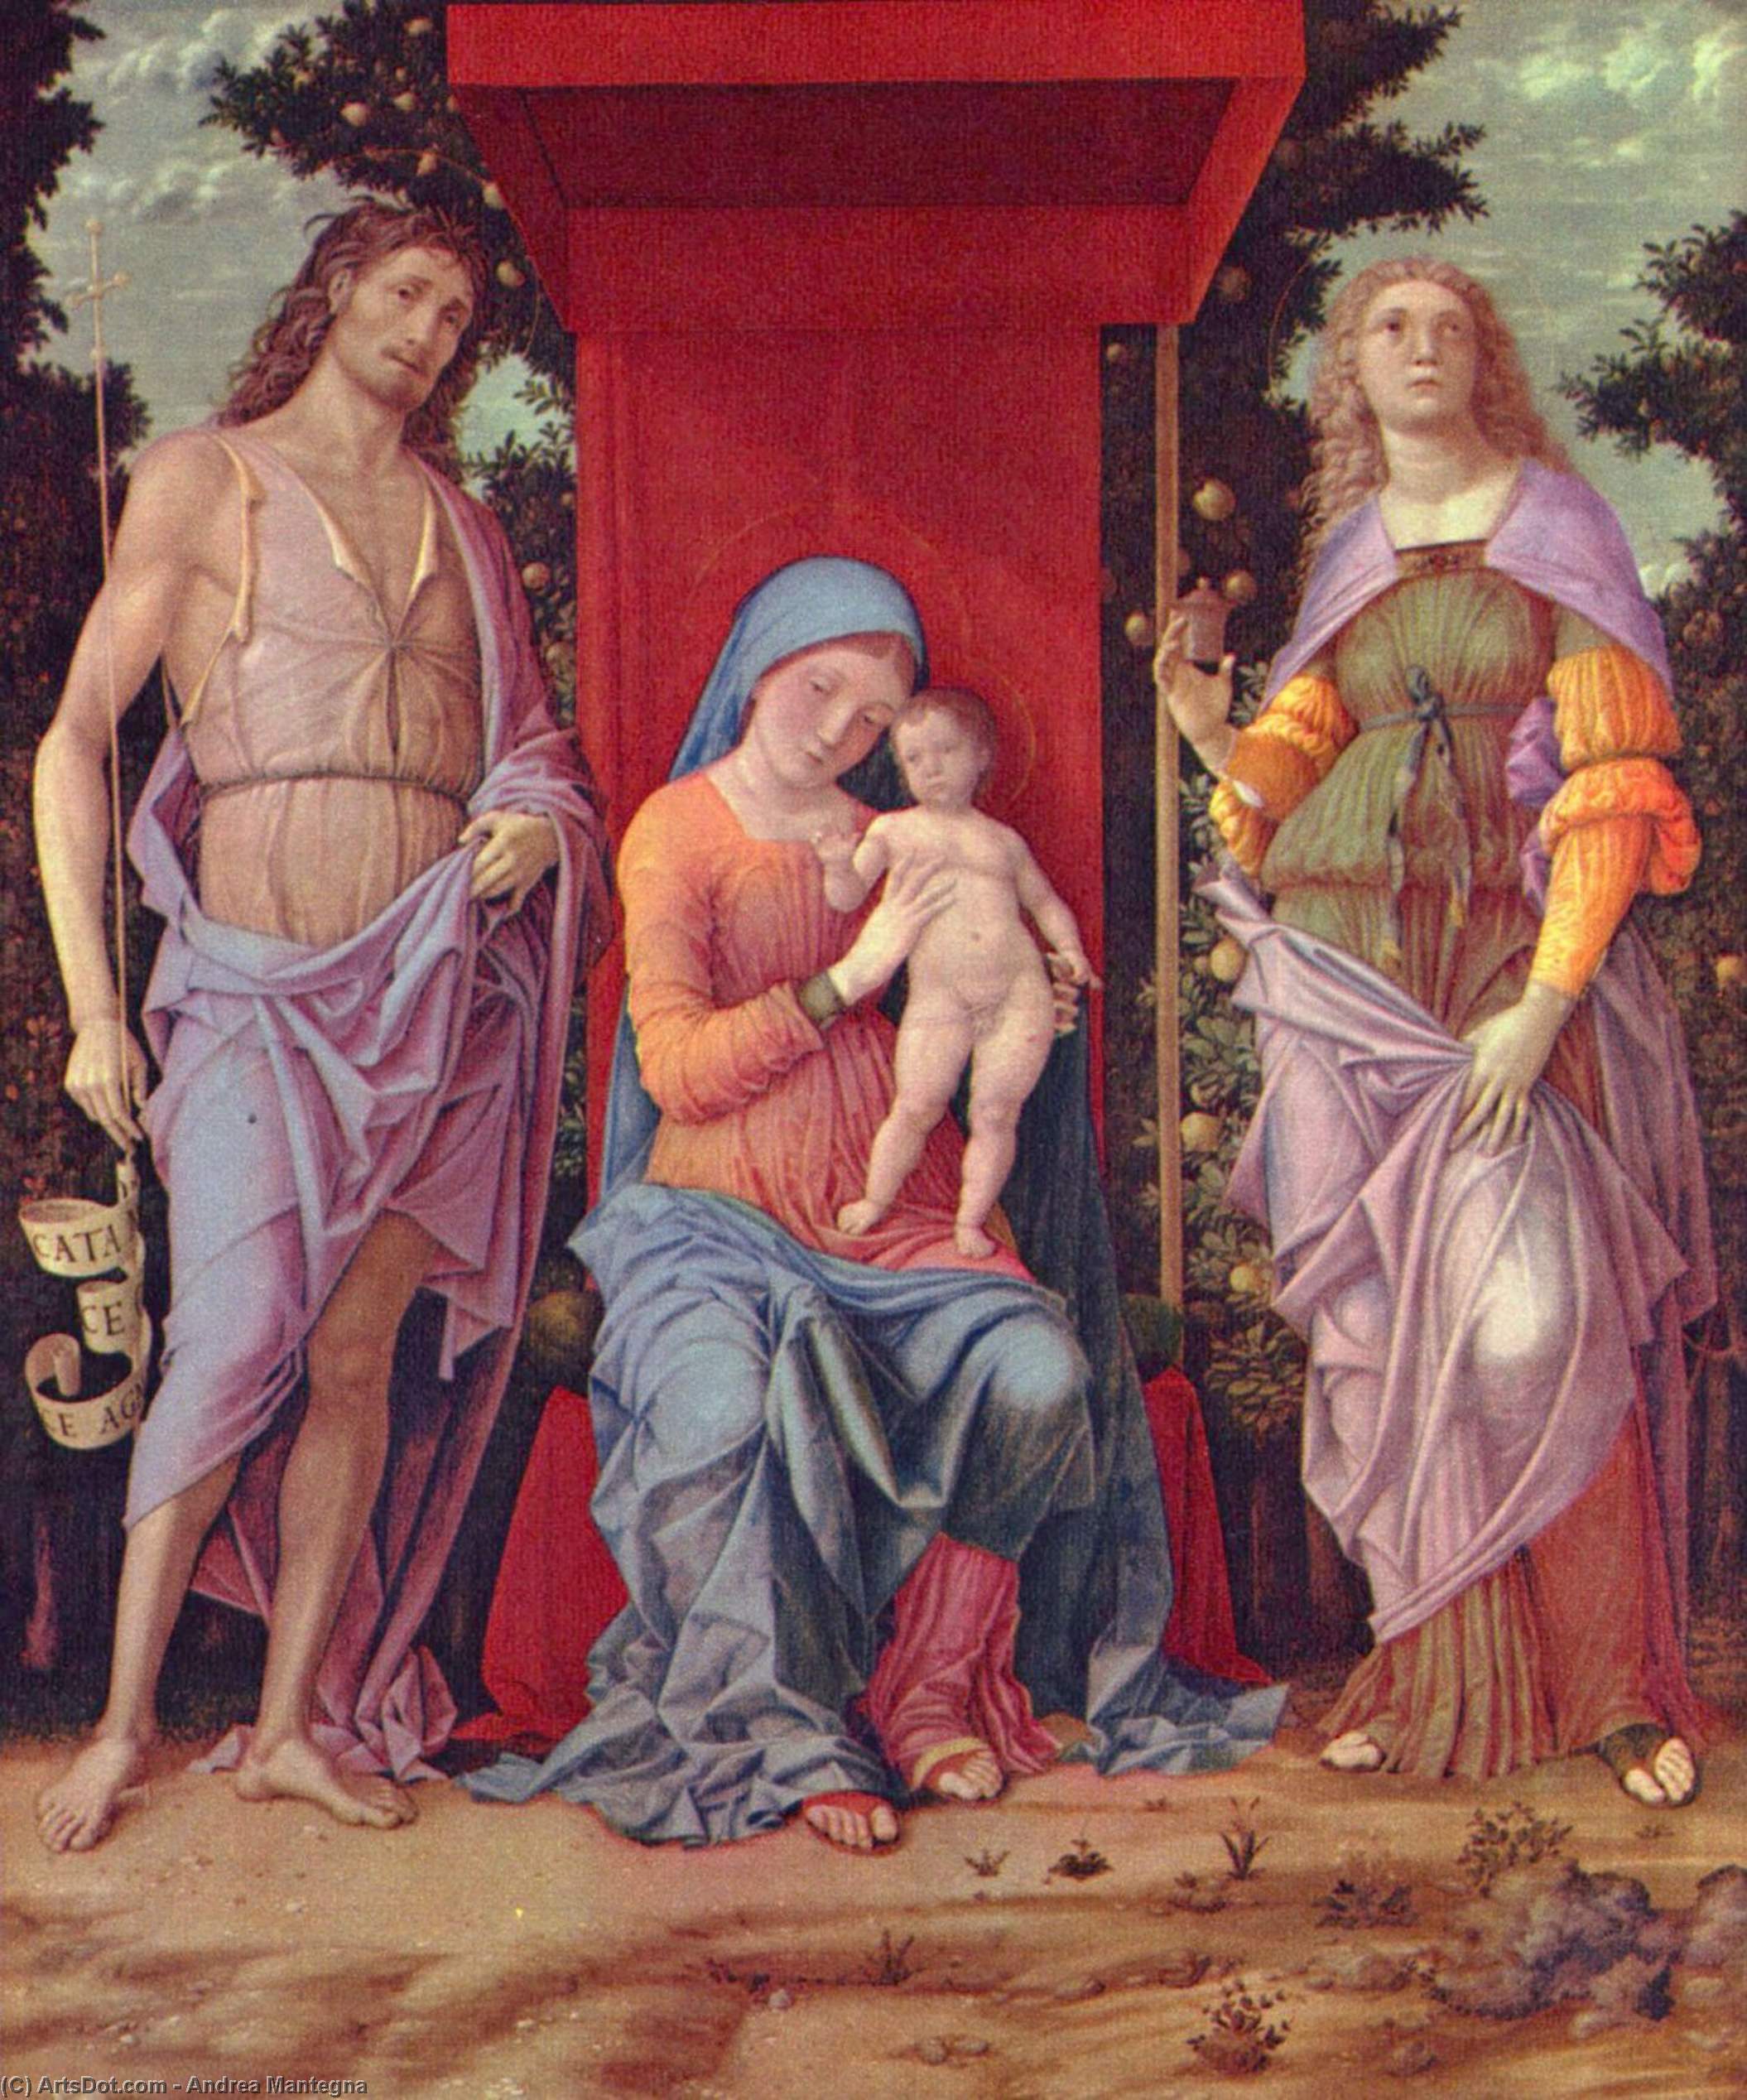 WikiOO.org - Encyclopedia of Fine Arts - Lukisan, Artwork Andrea Mantegna - Madonna mit Hl. Maria Magdalena und Hl. Johannes dem T ufer